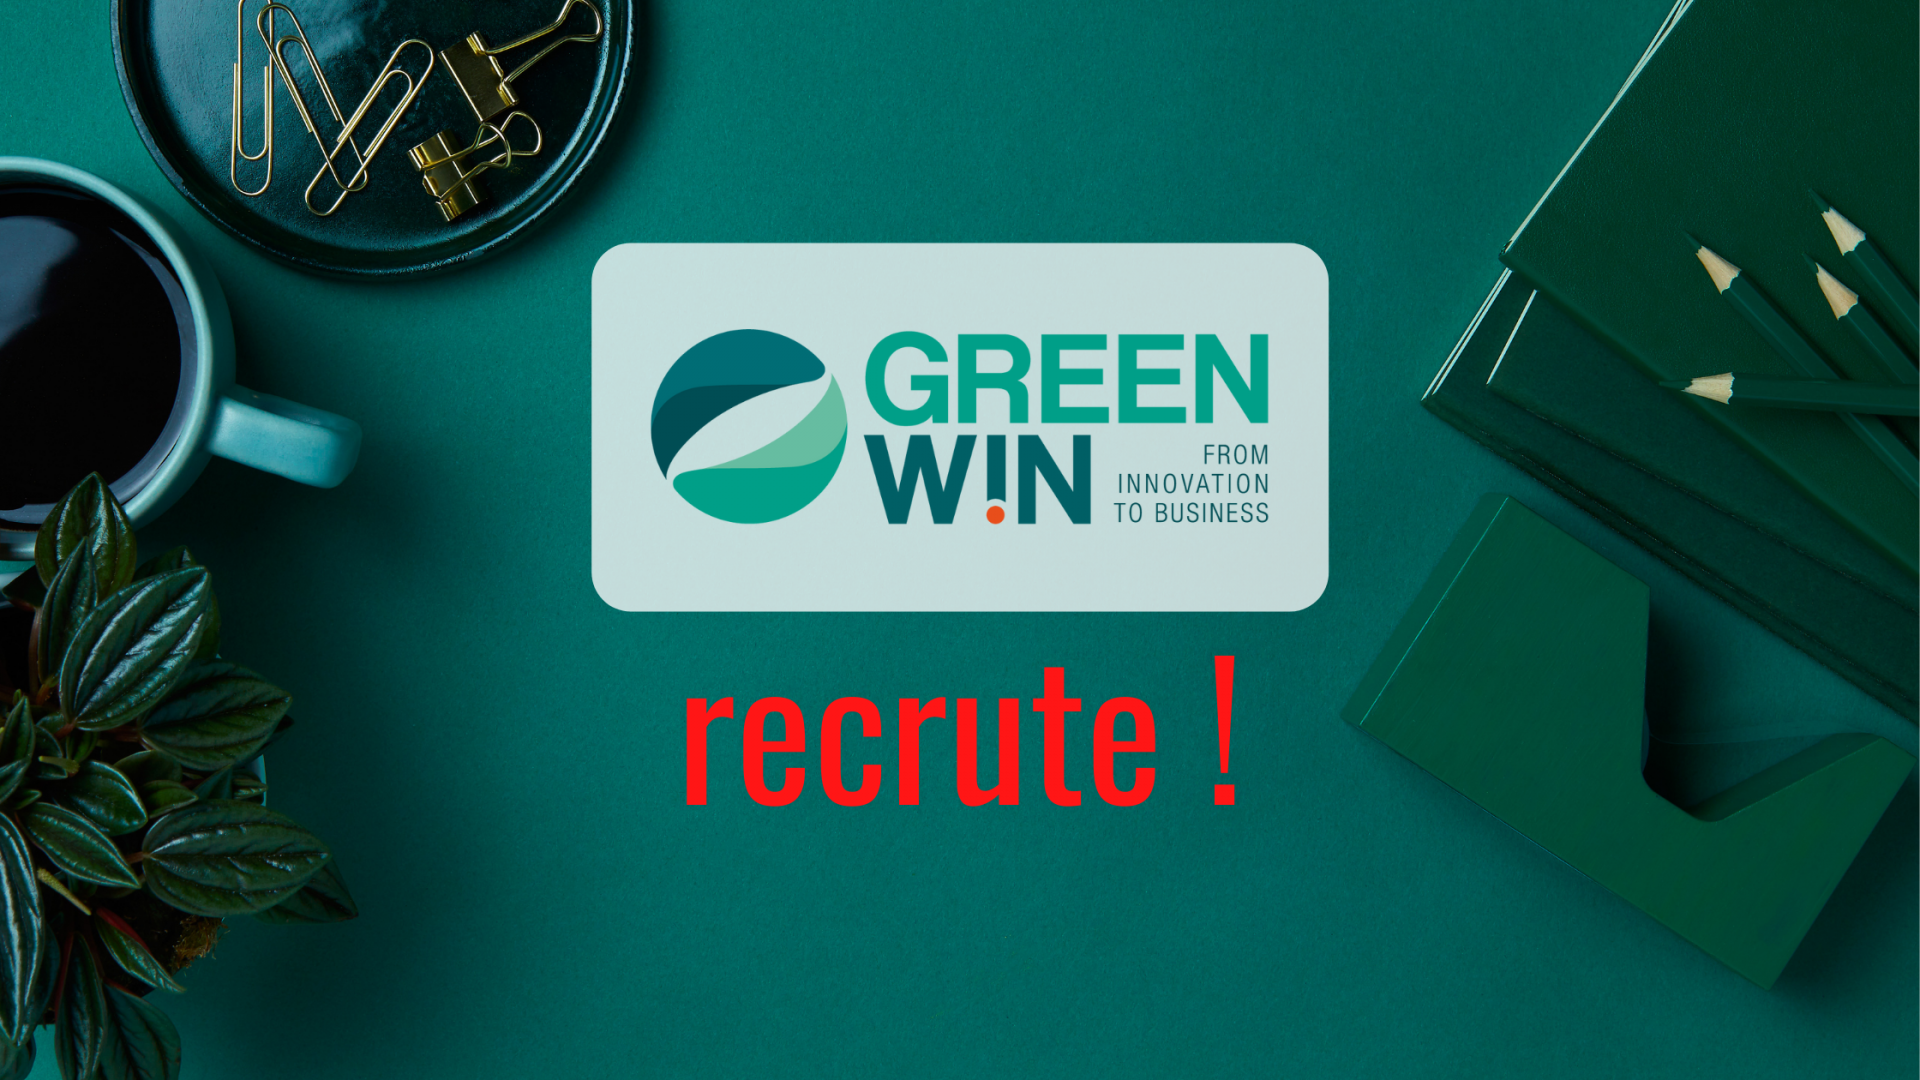 GreenWin recrute un.e Chargé(e) de Projets Innovation – Green Technologies